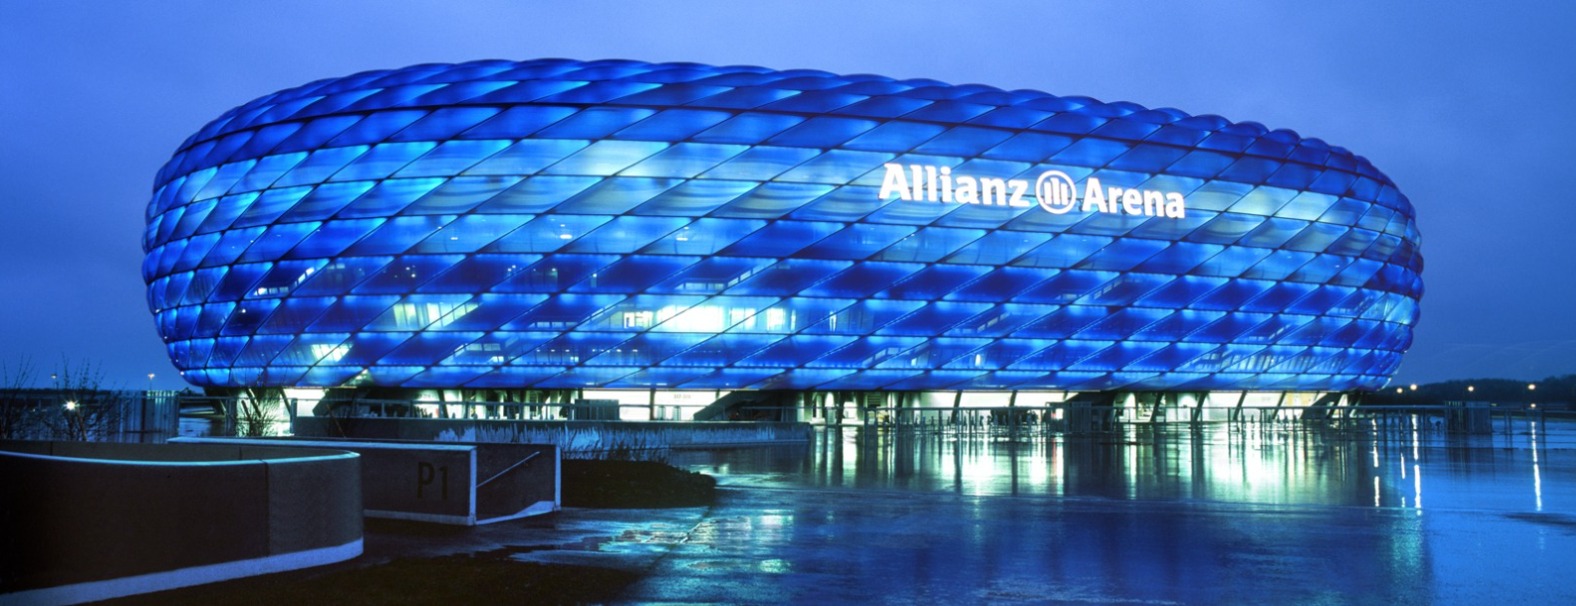 Allianz Versicherung Daniel Hiller Brandenburg - Allianz Arena